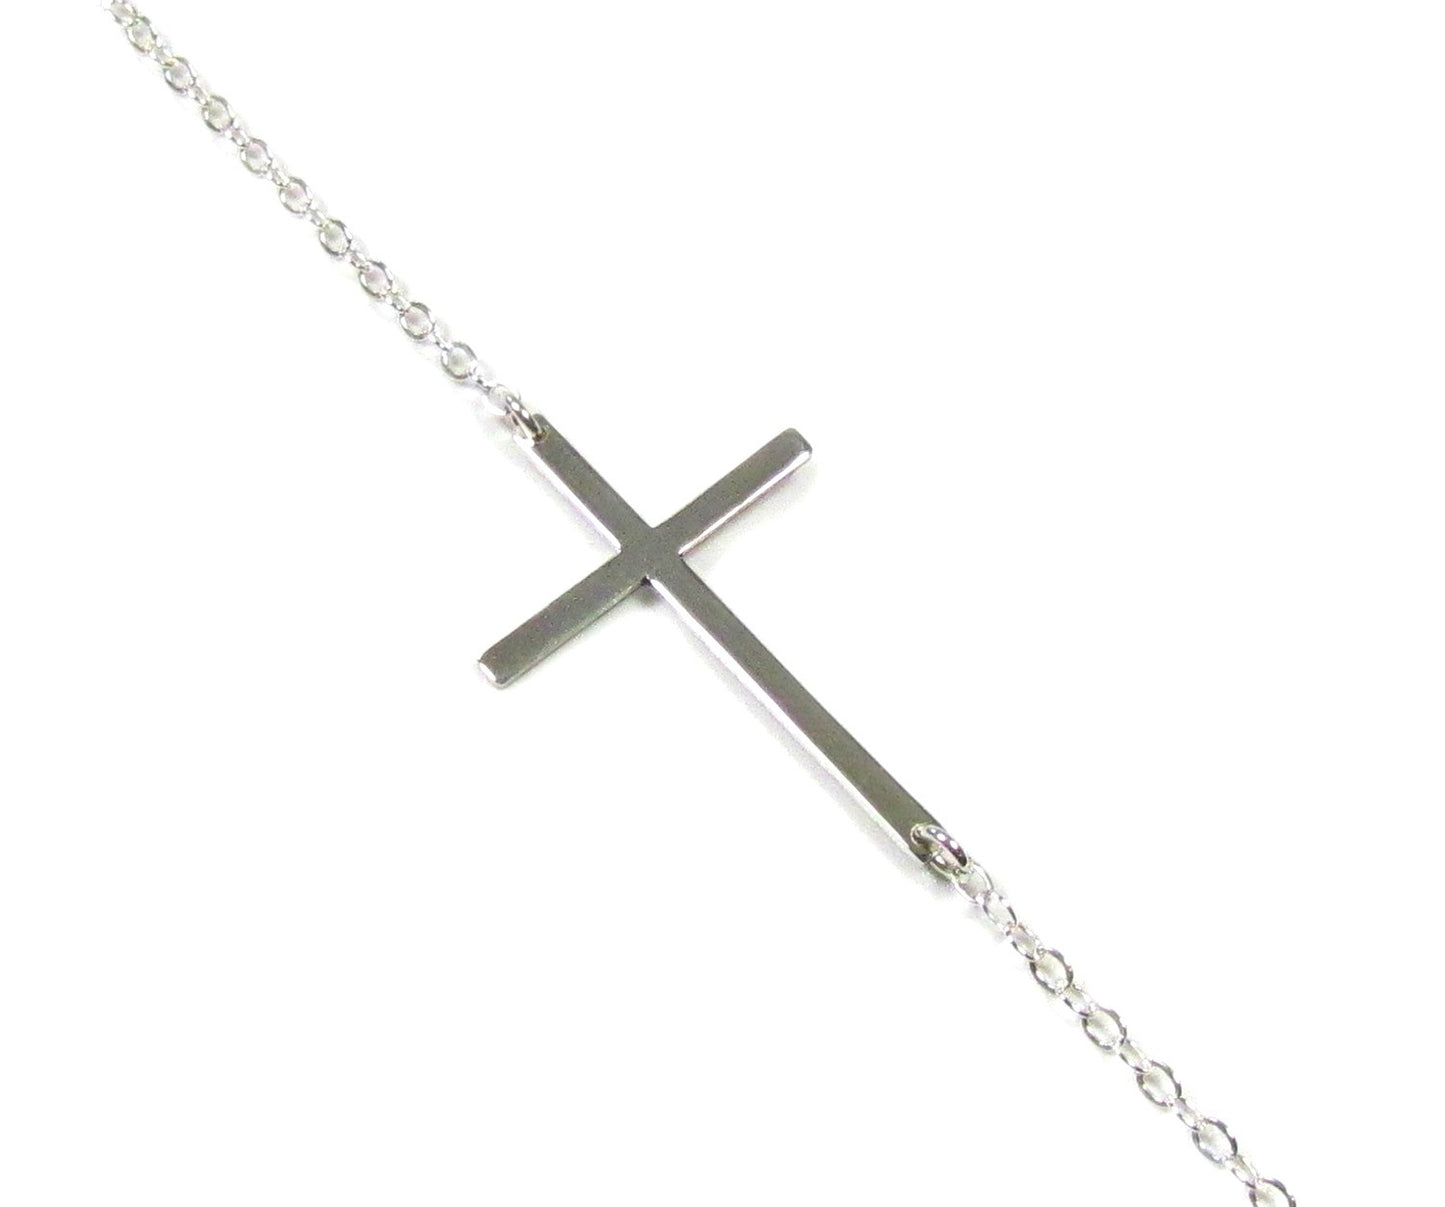 Sideways Cross Necklace - Kelly Ripa